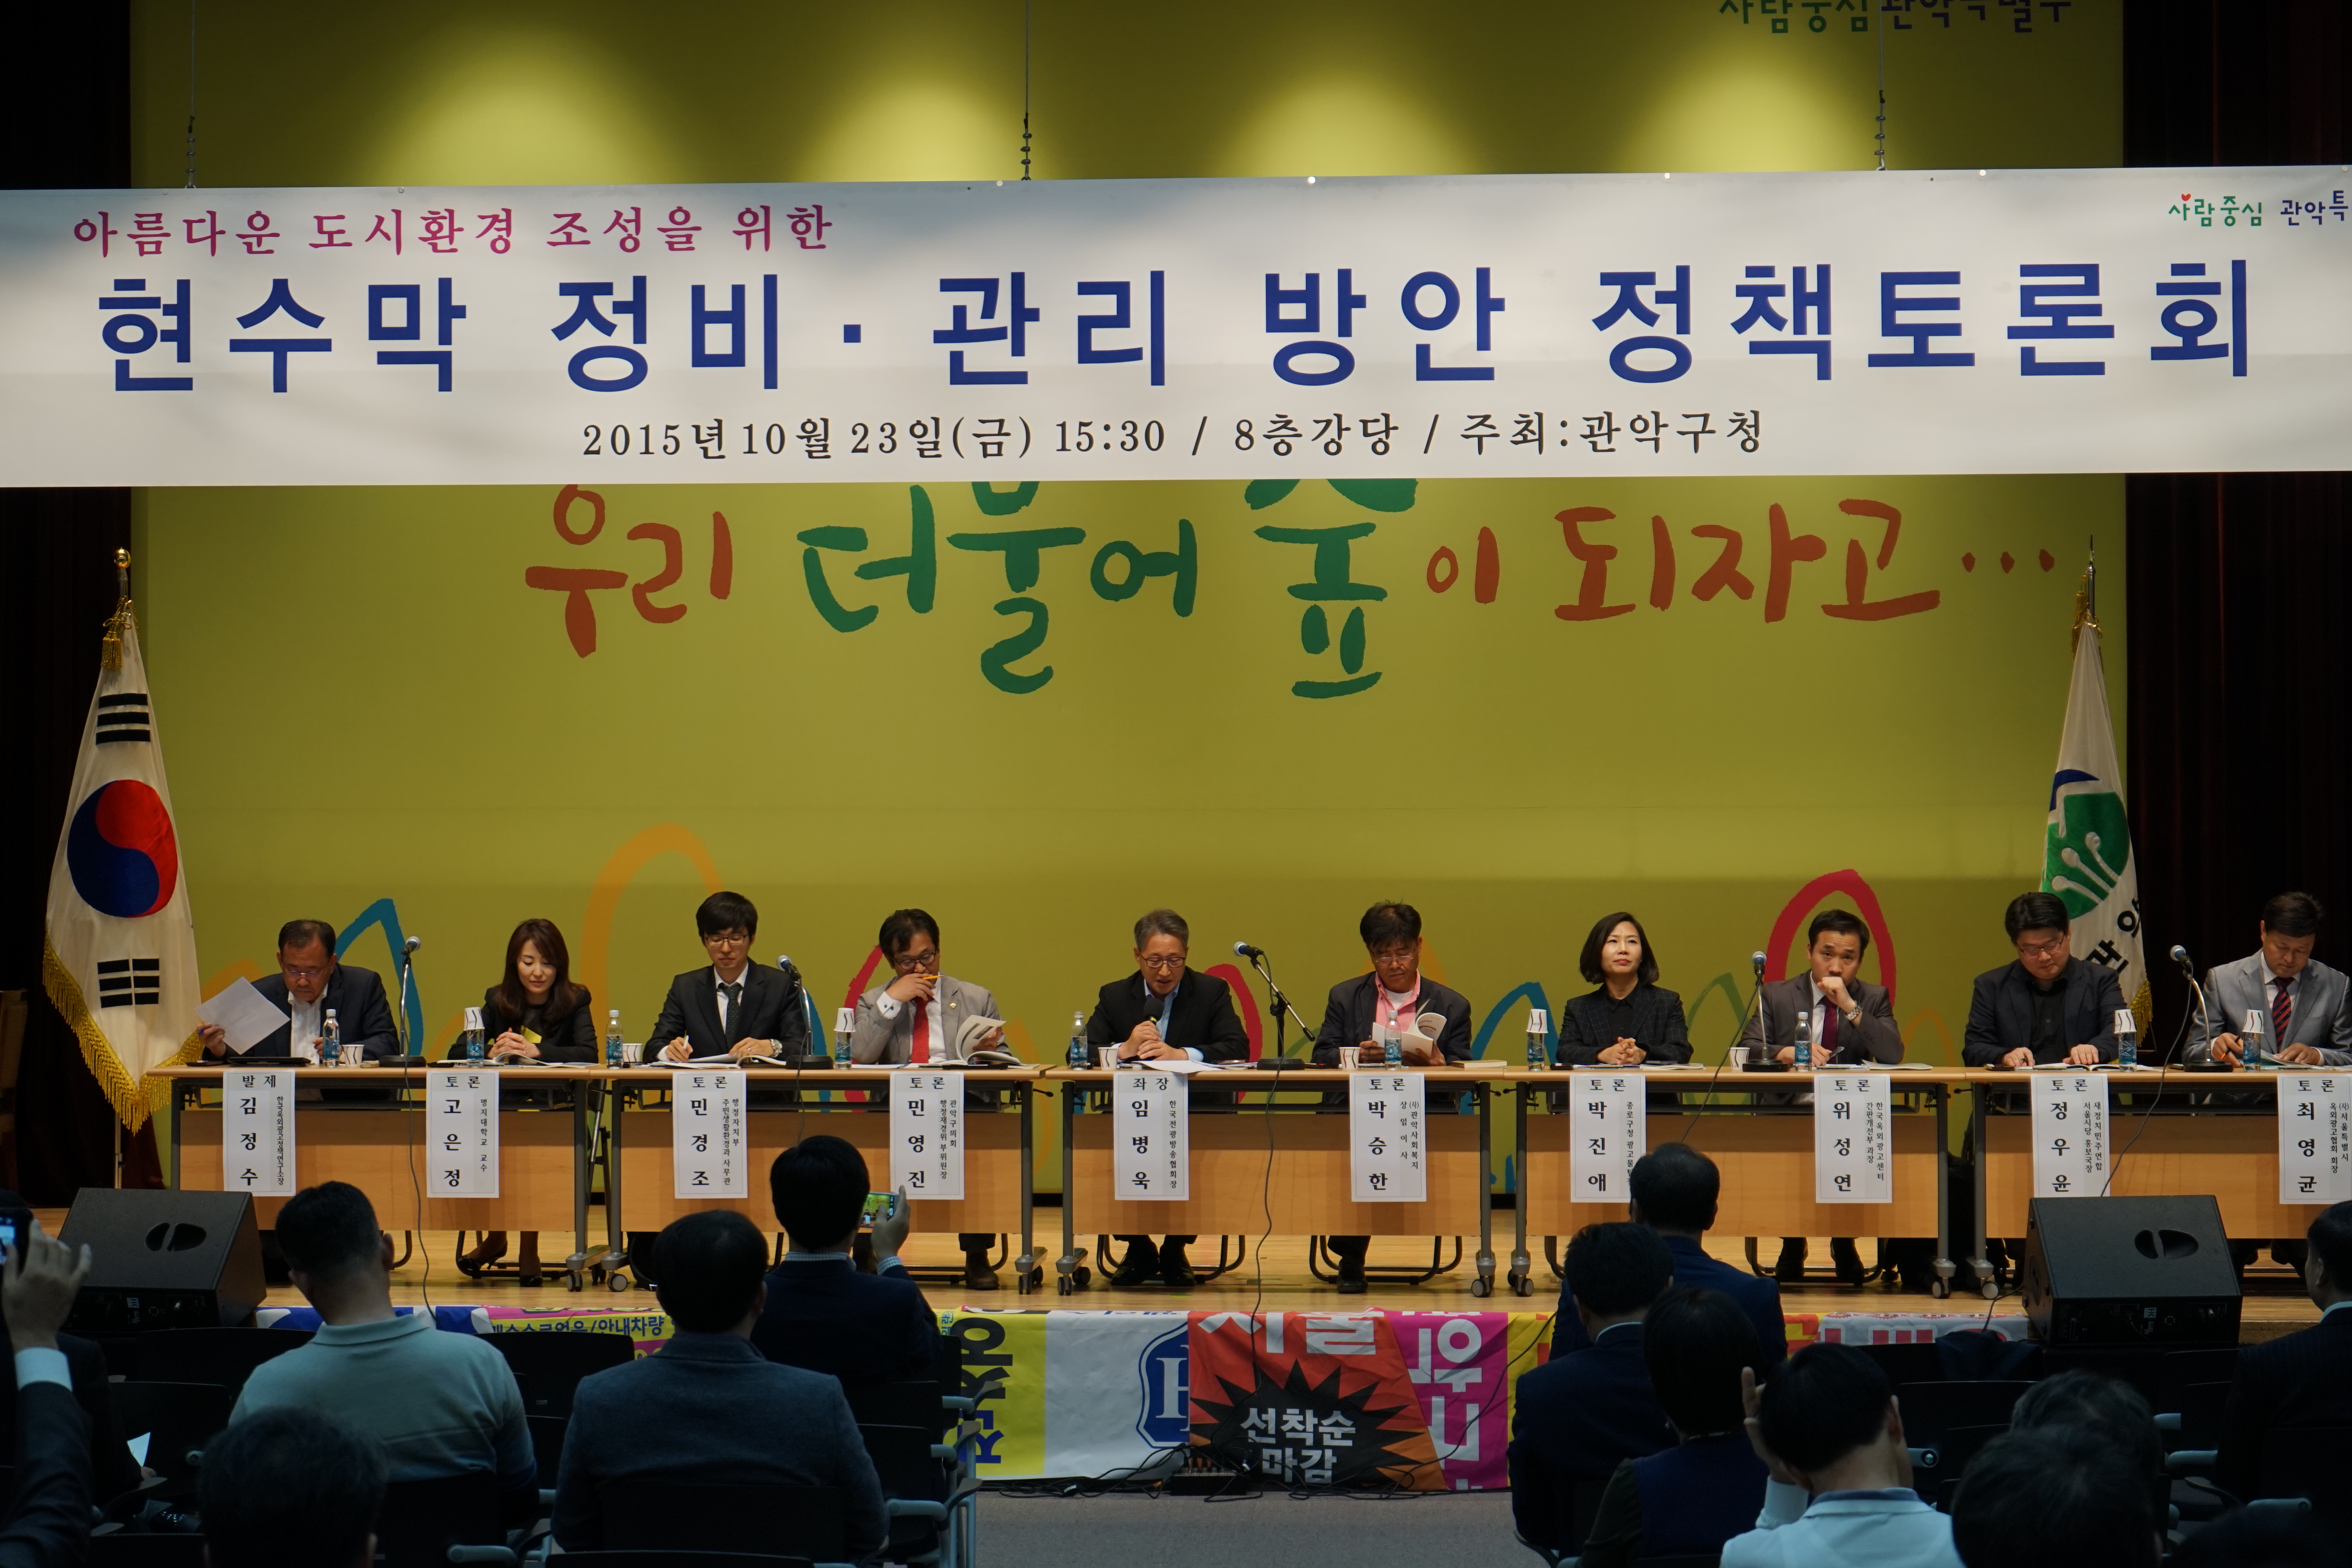 23일 서울 관악구청에서 불법현수막 근절대책을 논의하는 토론회가 열렸다.